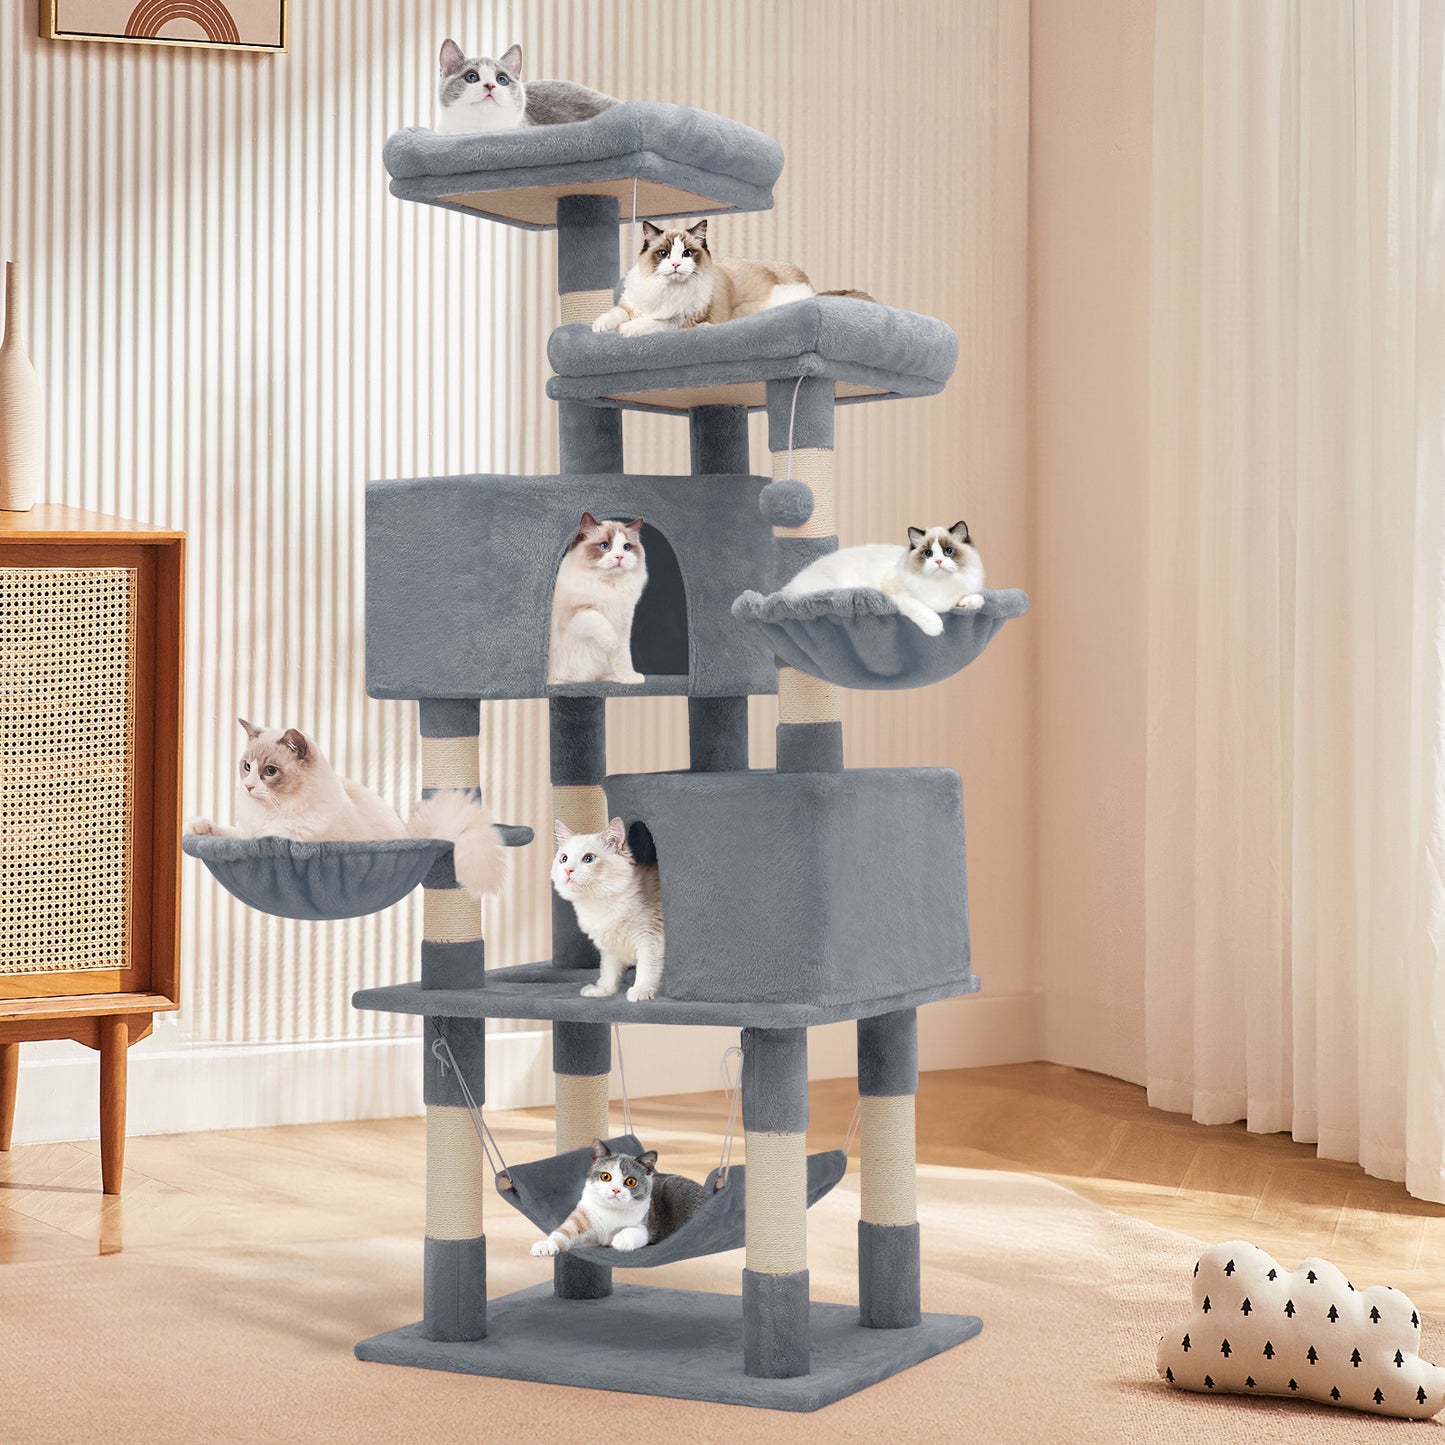 Cat Tree - 57.5'' Height - w/Hammock, Basket Lounge